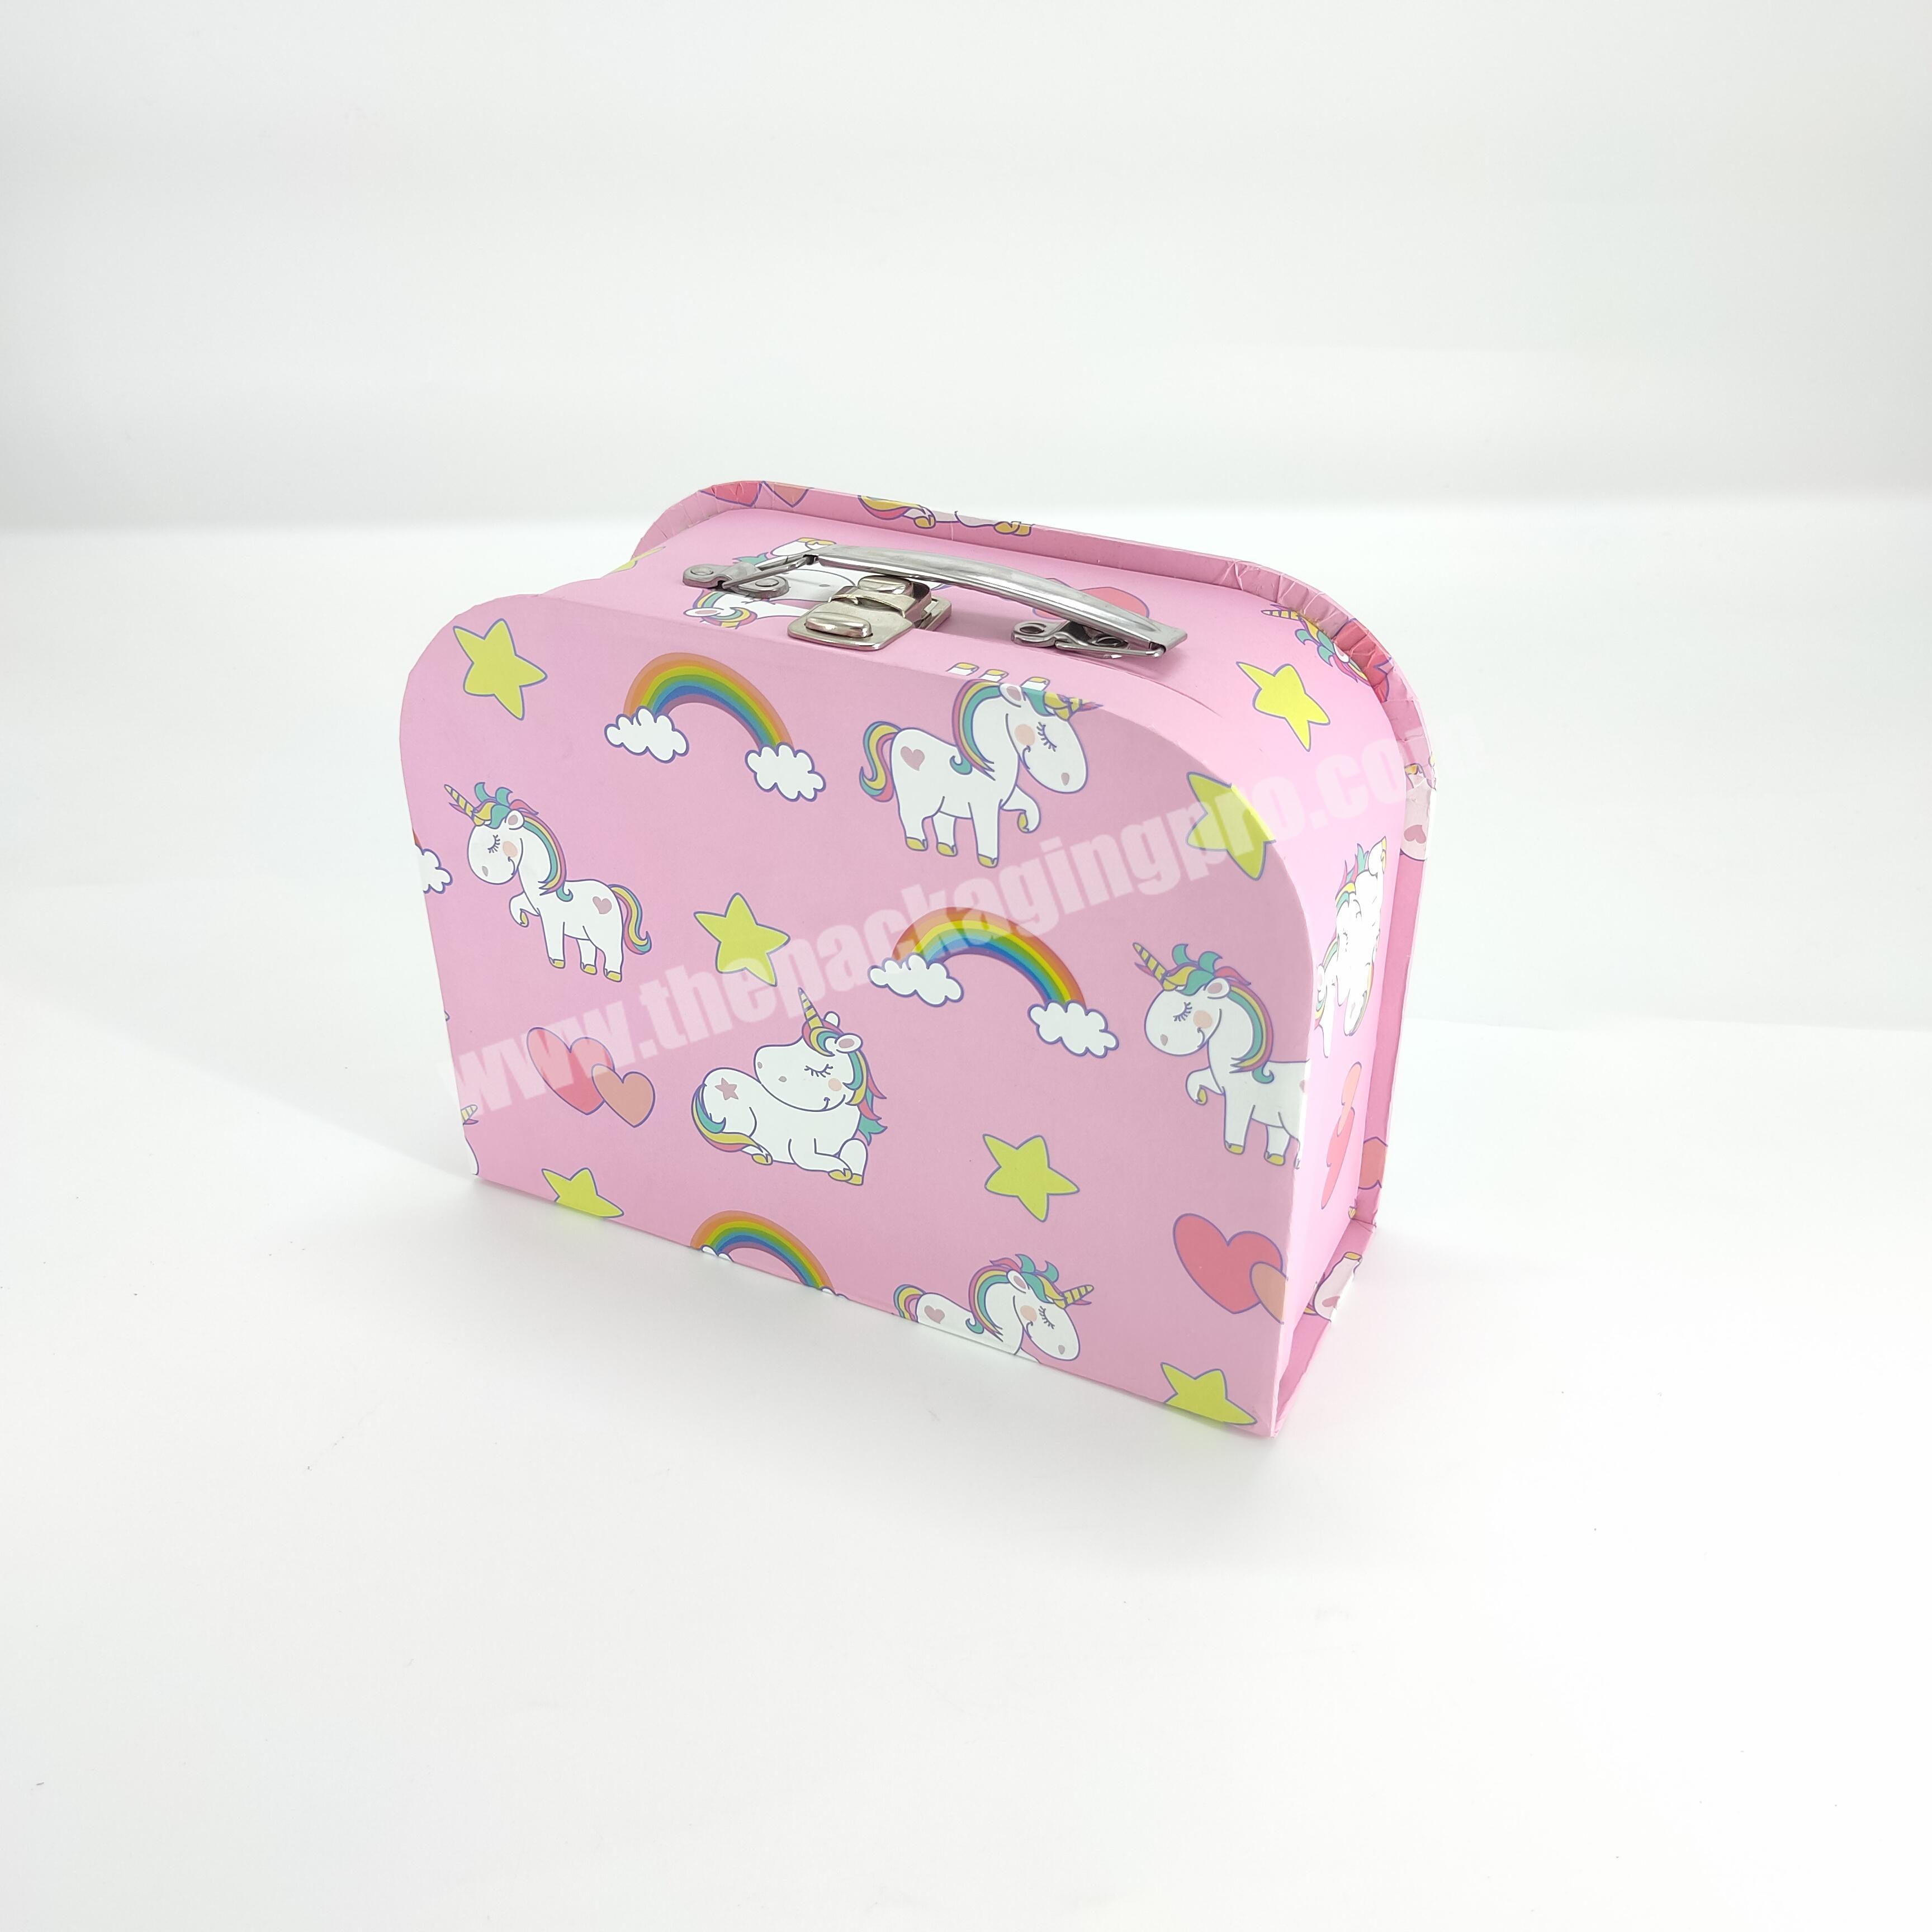 Handmade paper gift box suitcase storage box